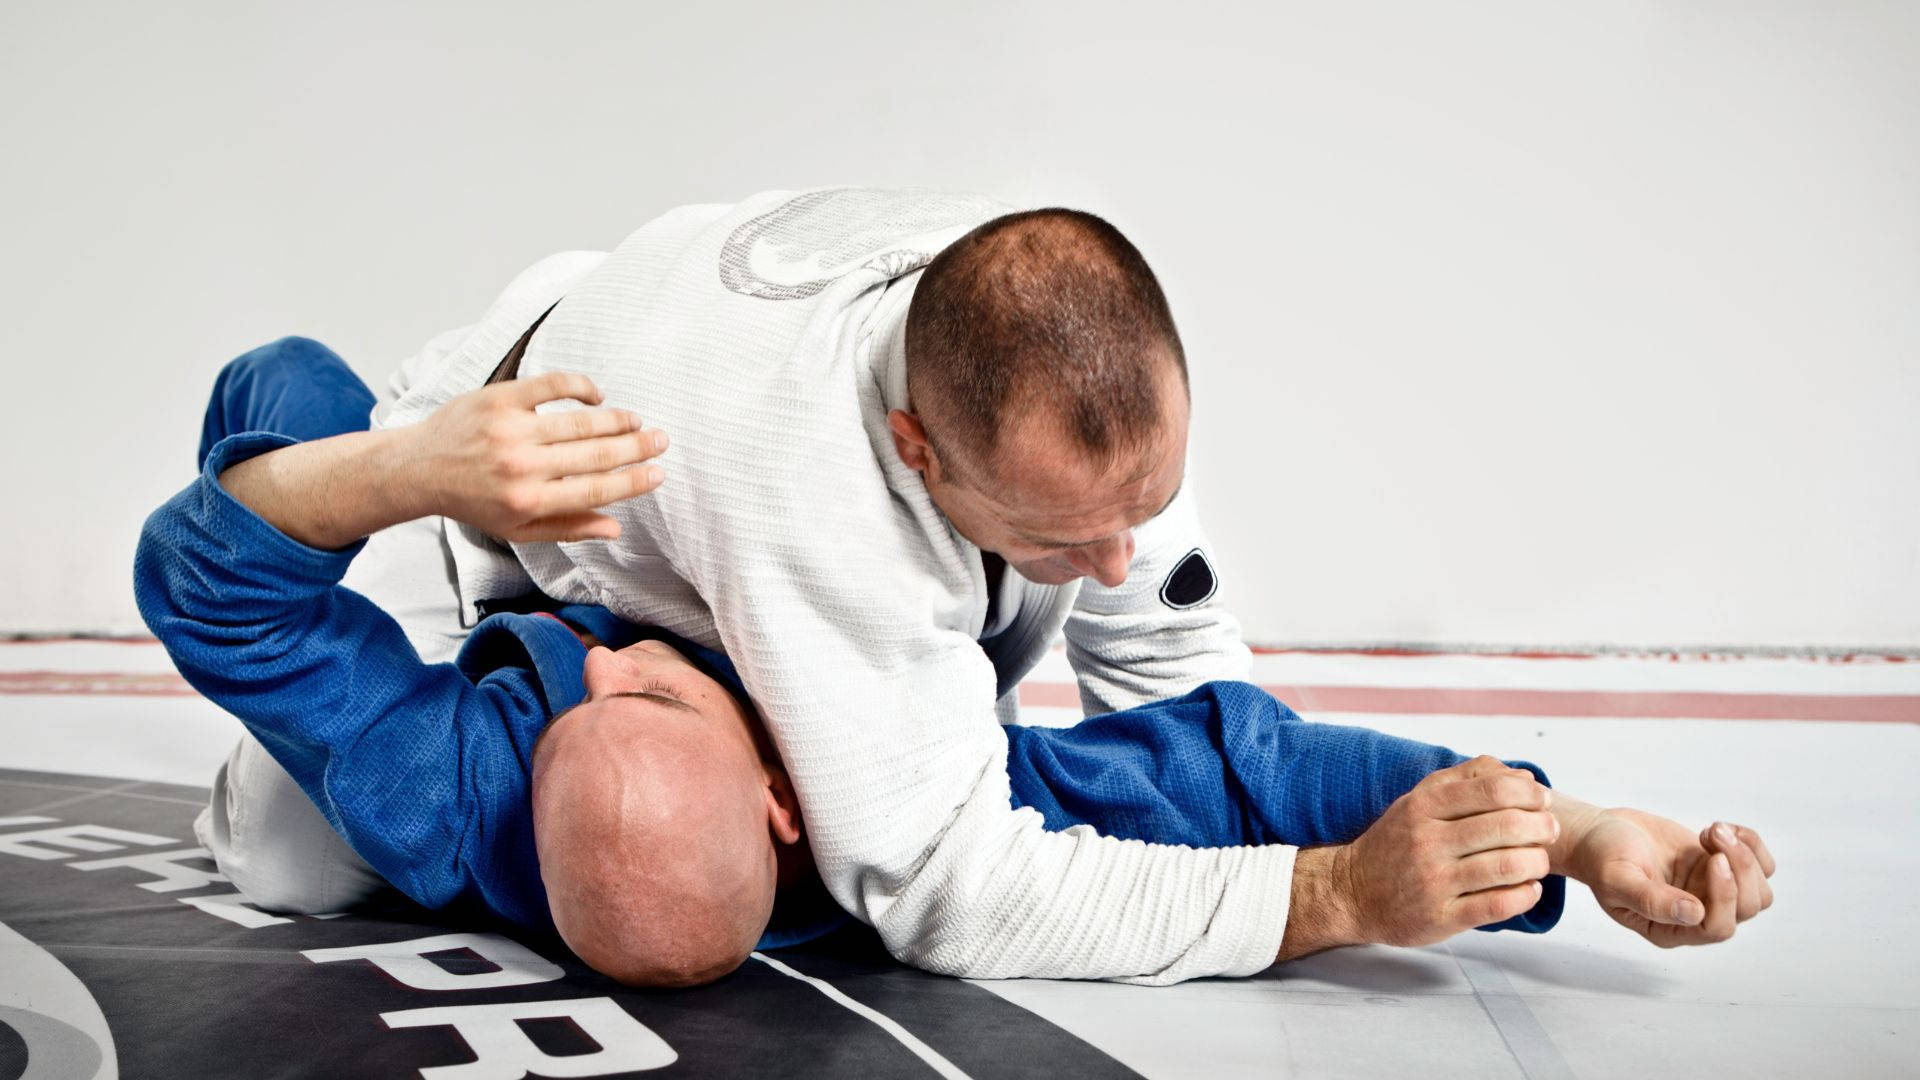 Brazilian Jiu-jitsu Martial Arts Sports Action Background